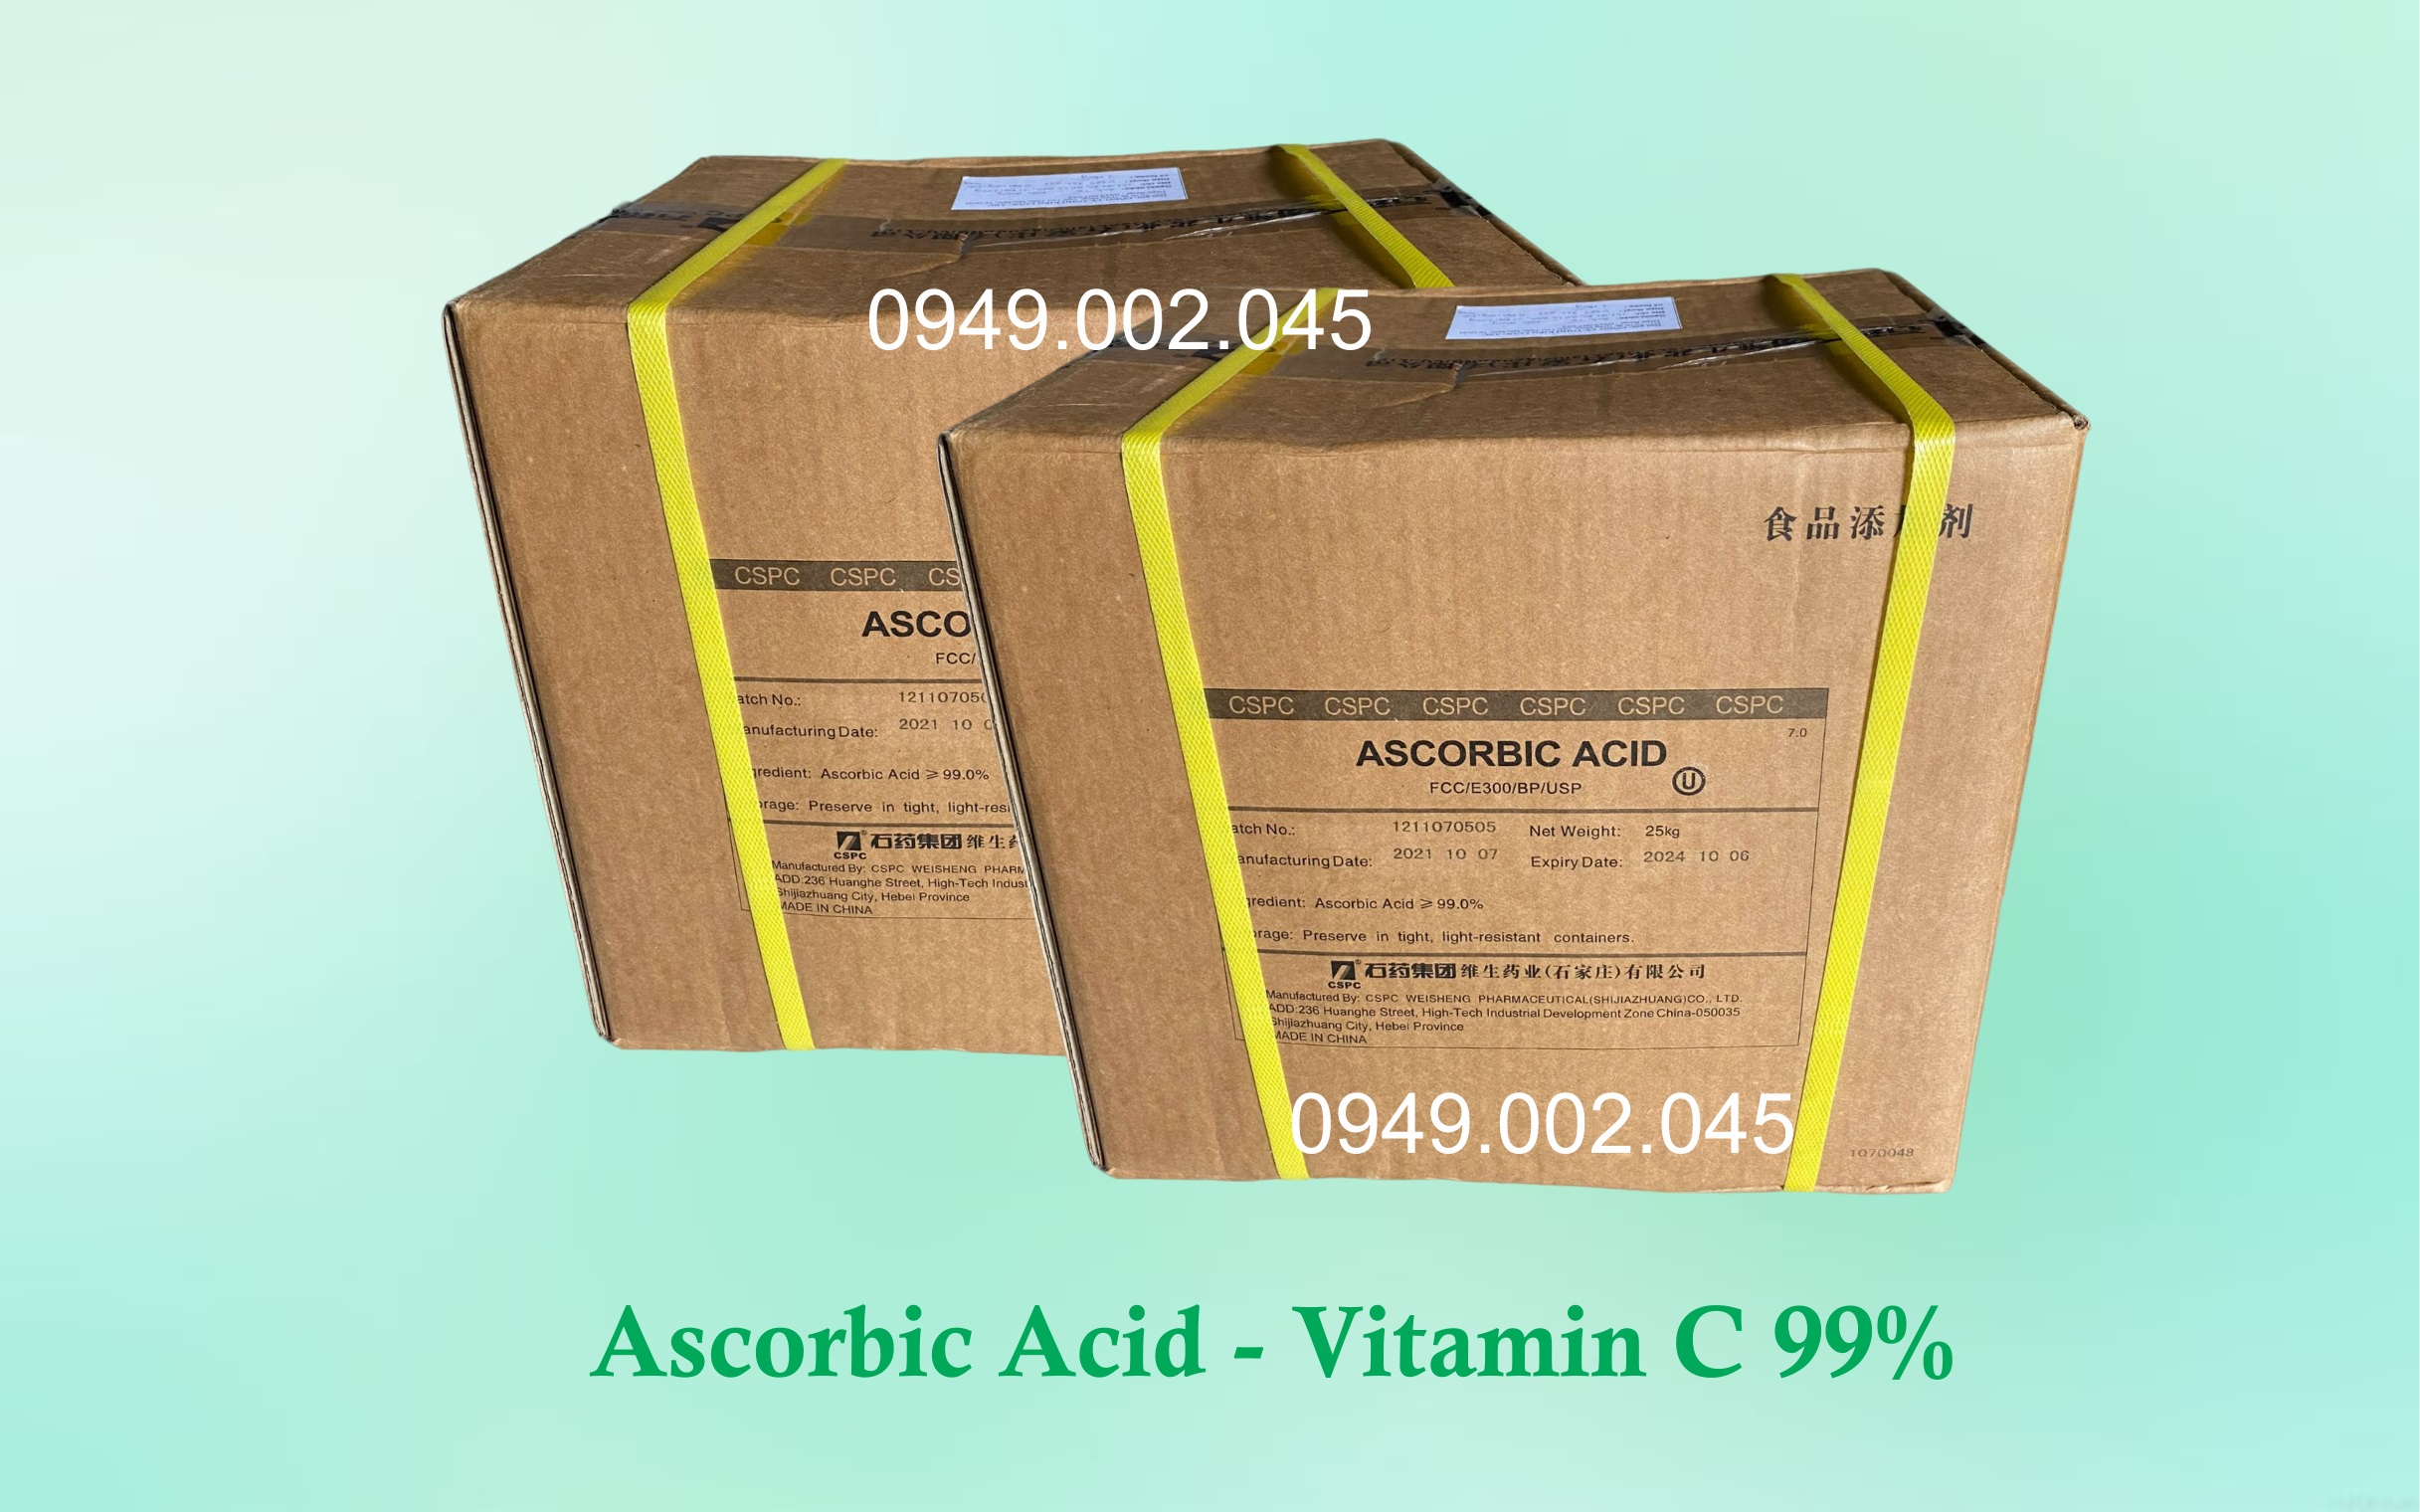 Ascorbic acid - Nguyên liệu vitamin C 99% giúp tôm cá tăng sức đề kháng